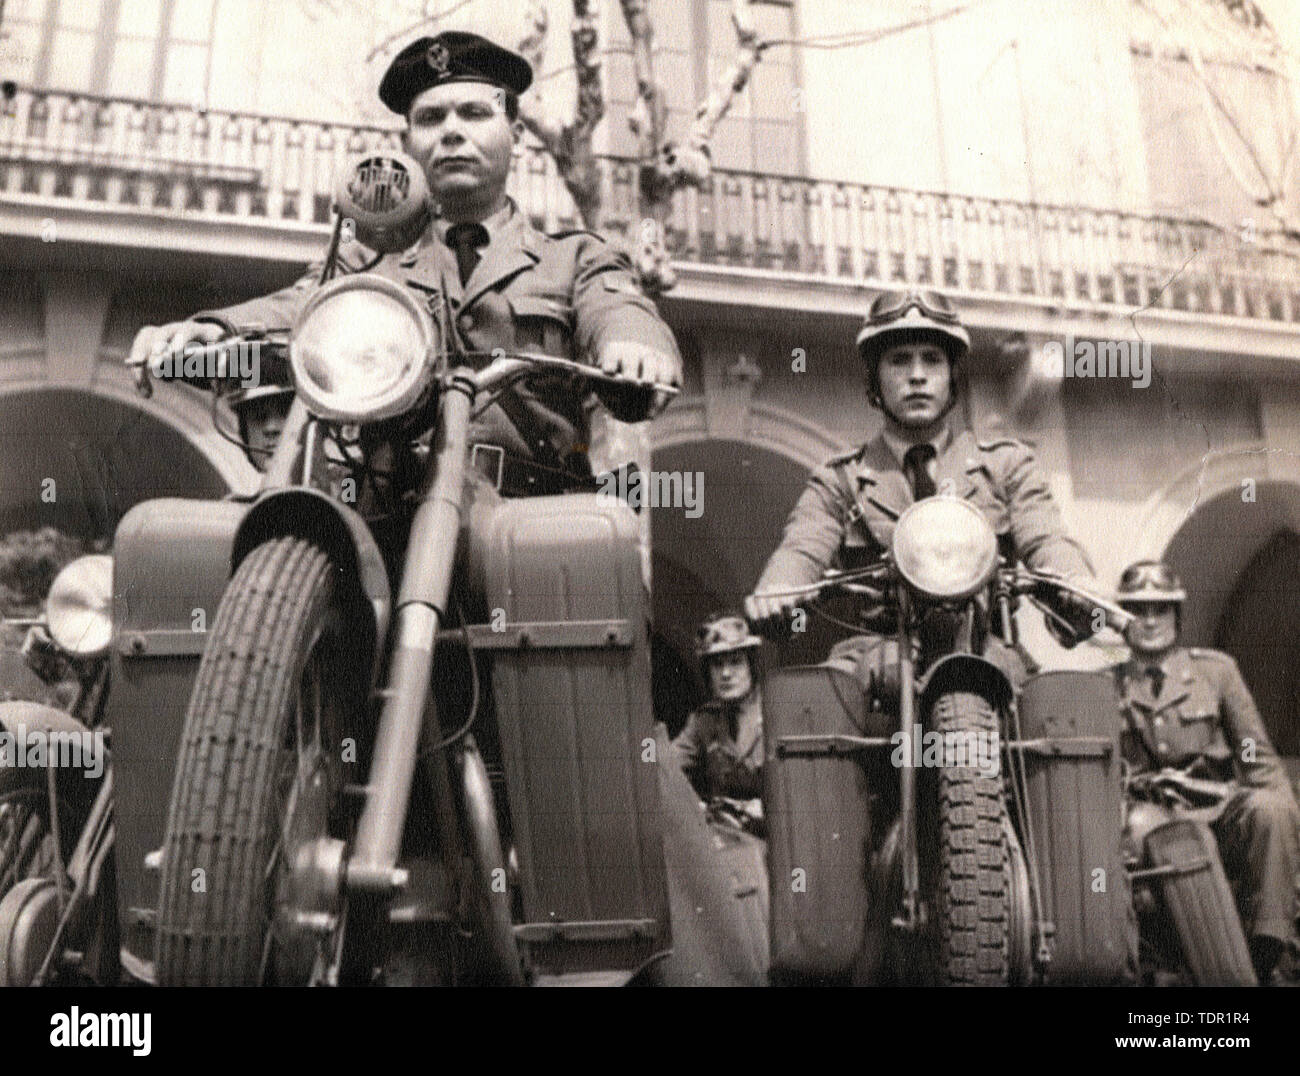 italian-army-motorcyclists-1950s-TDR1R4.jpg